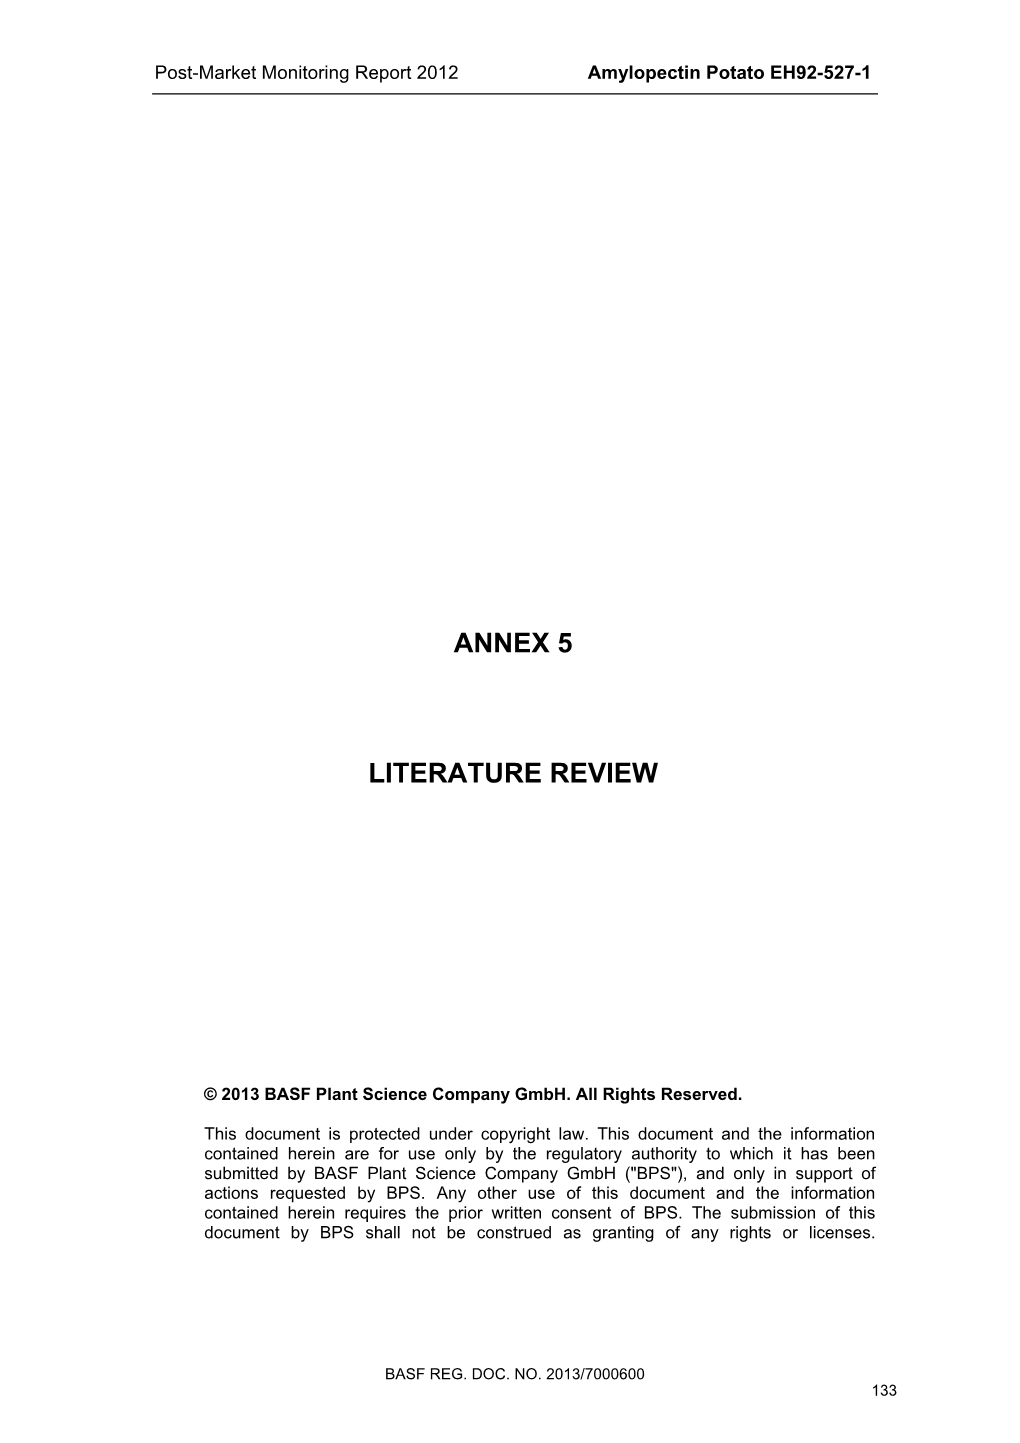 Annex 5 Literature Review